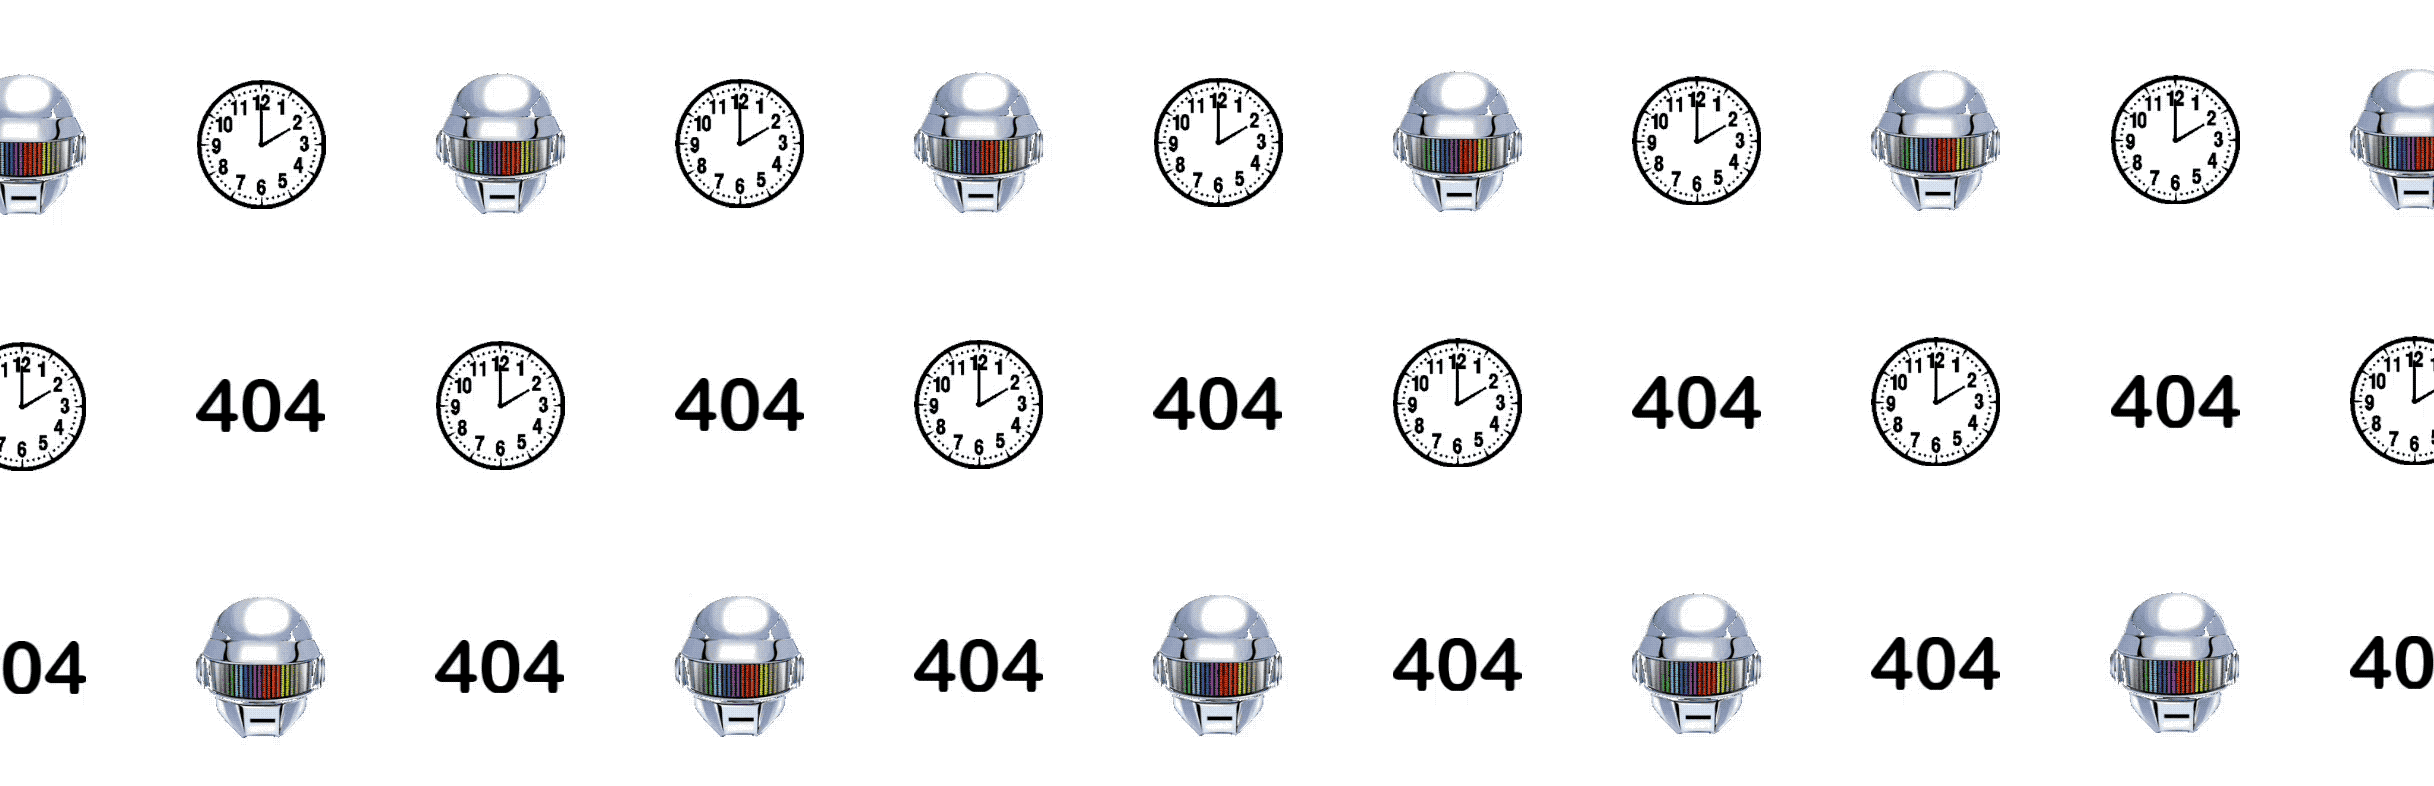 Robots 404